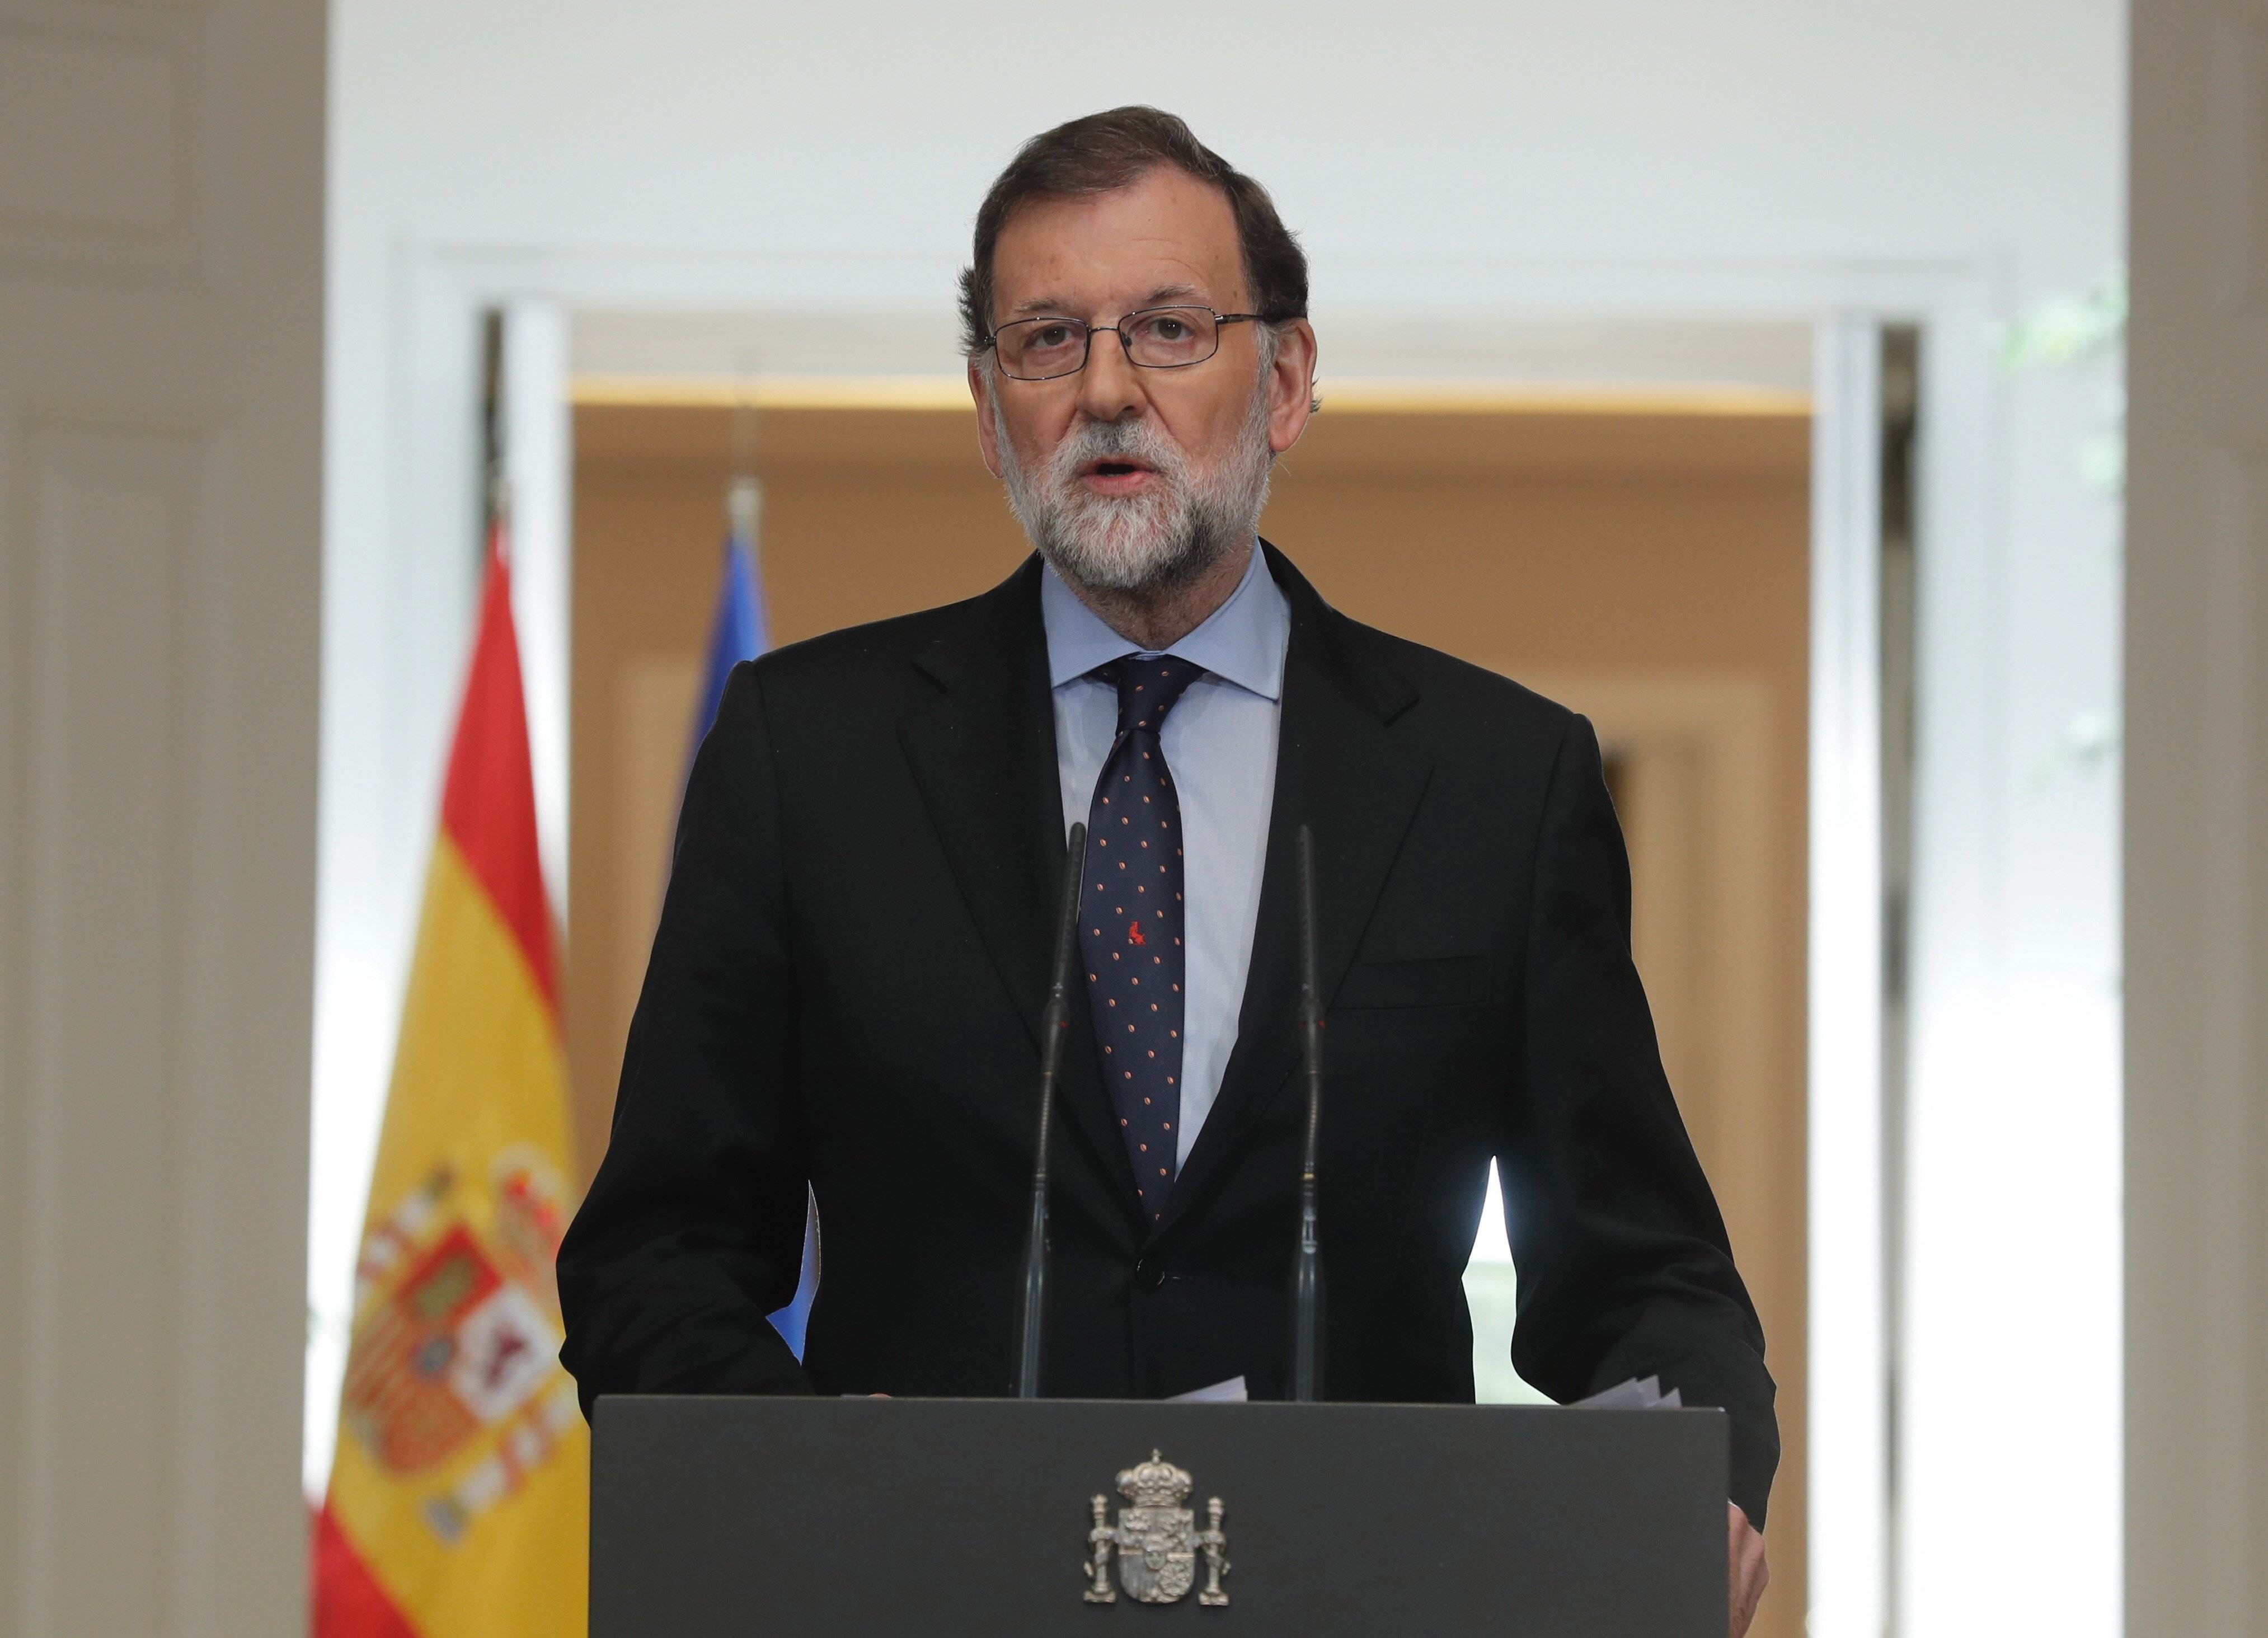 El Consejo de Estado avala el recurso de Rajoy contra la investidura a distancia